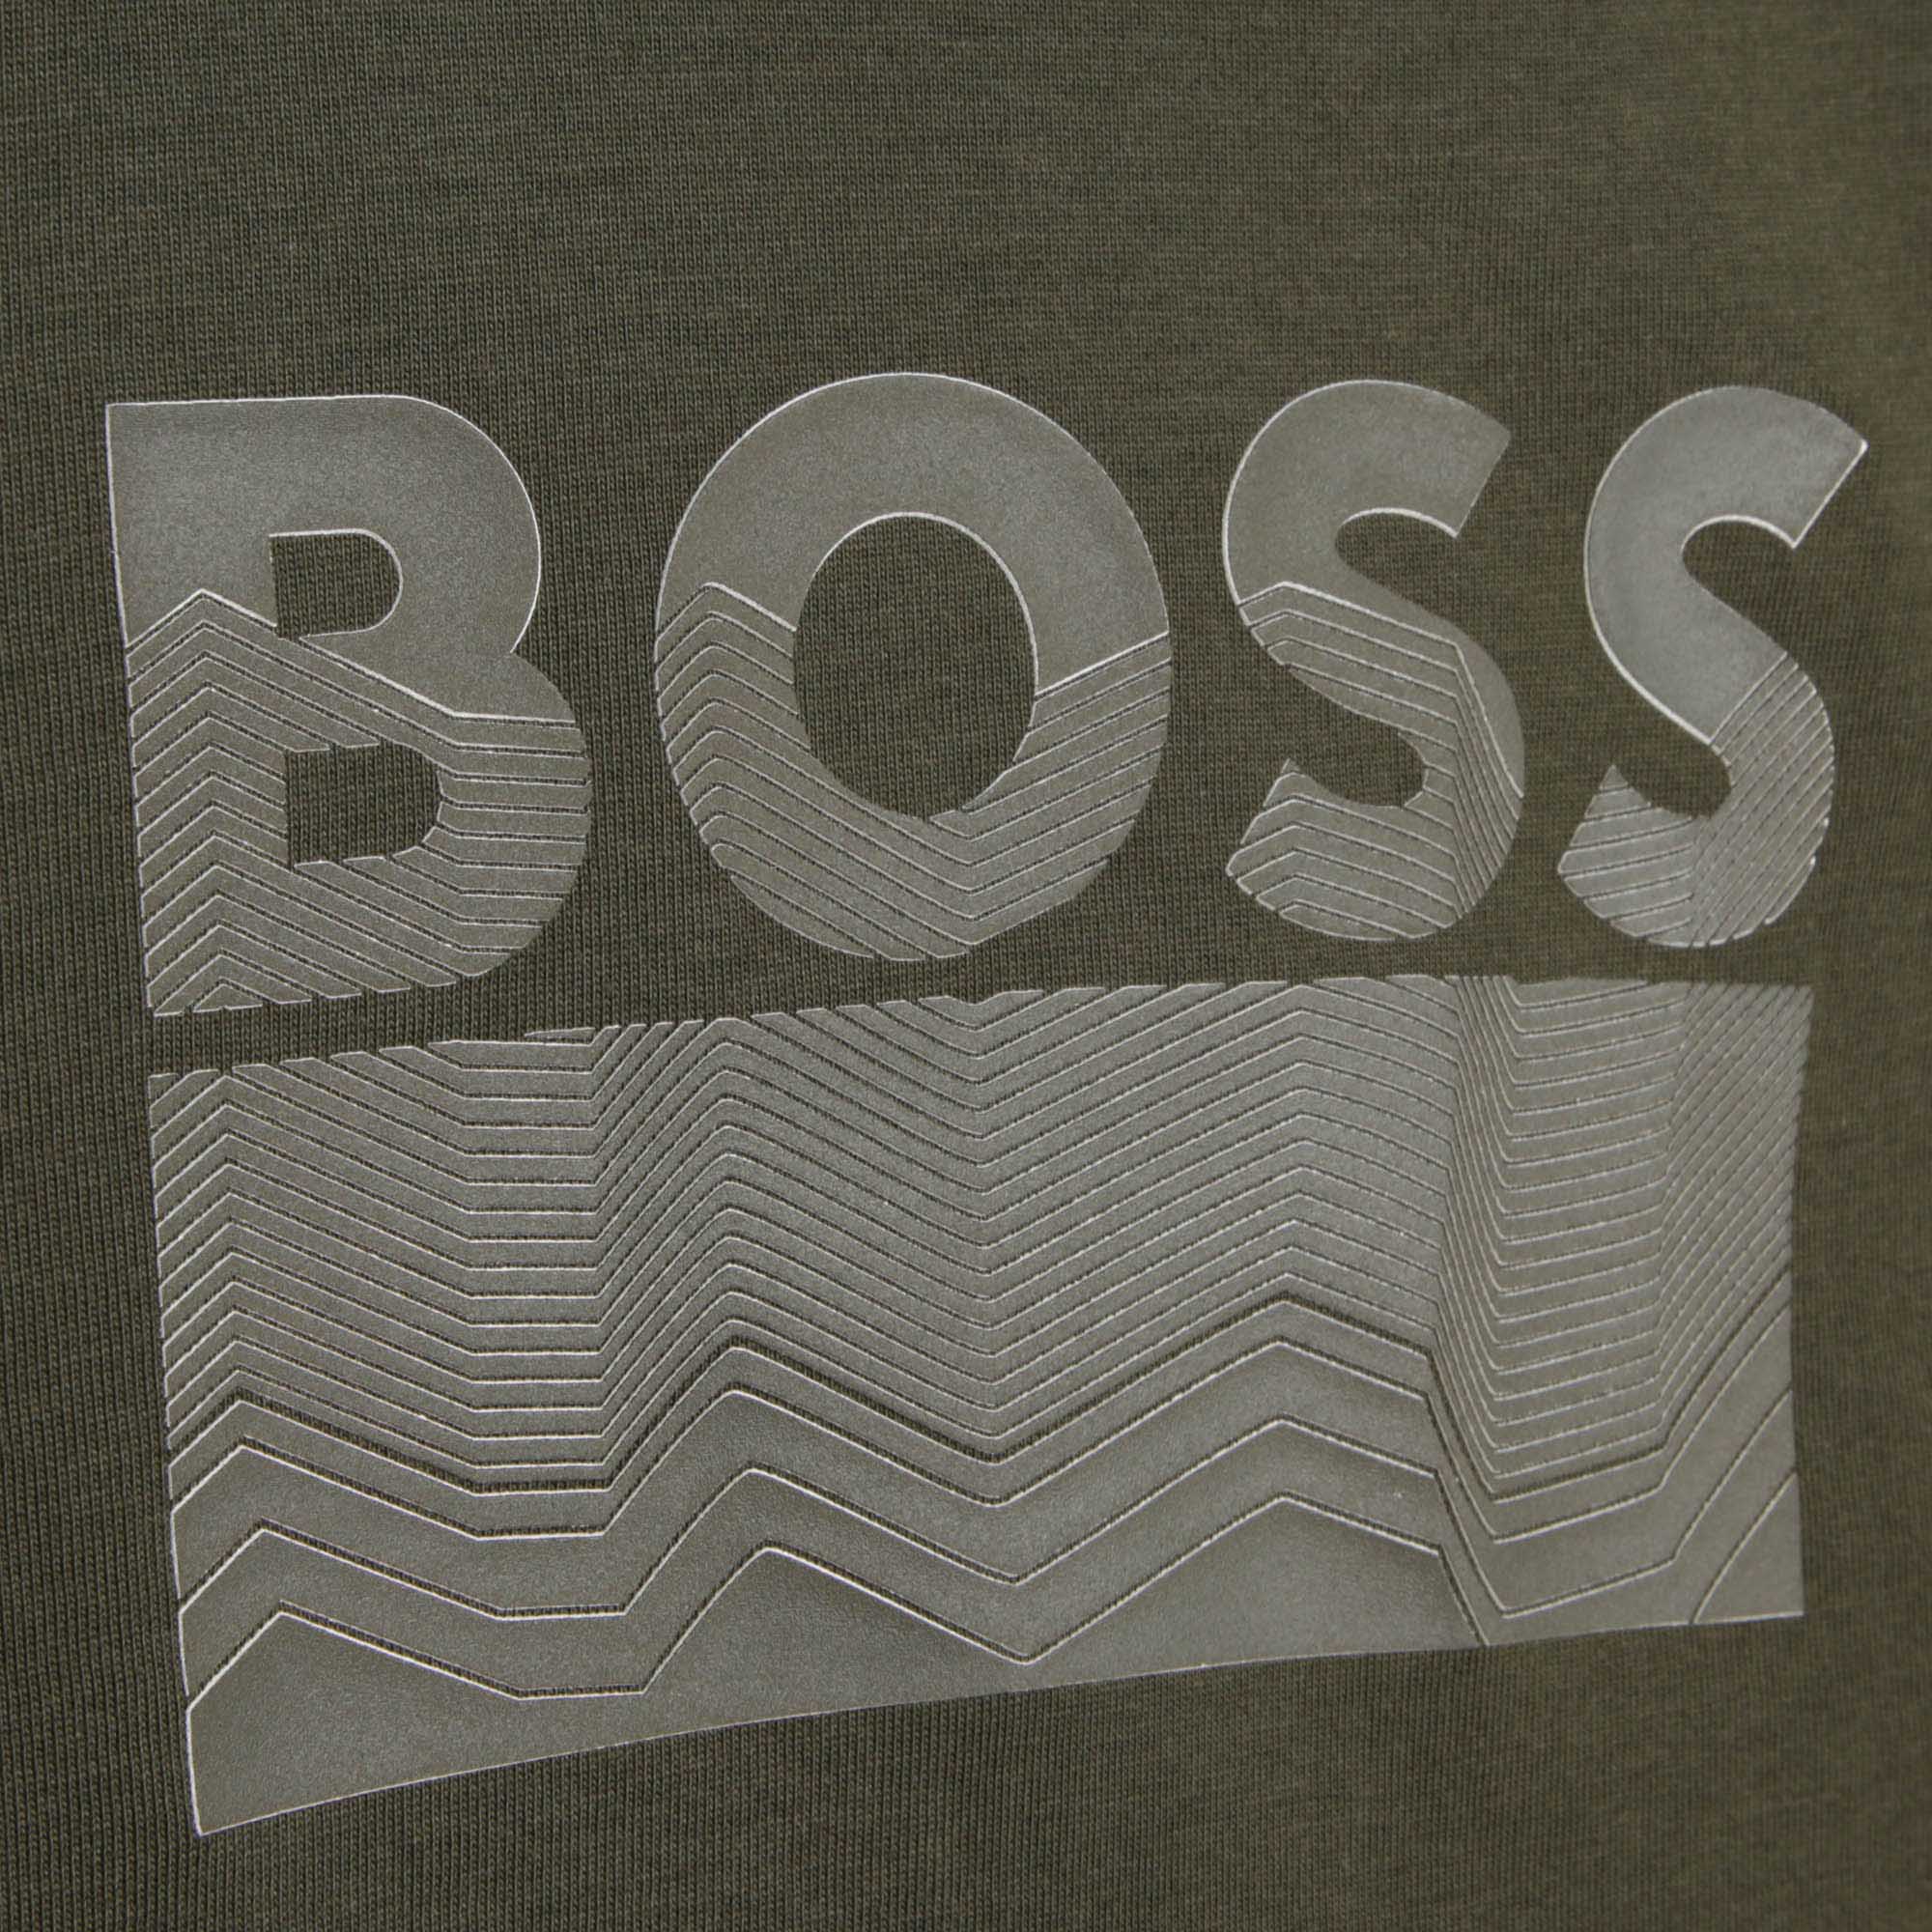 Baumwoll-T-Shirt mit Druck BOSS Für JUNGE